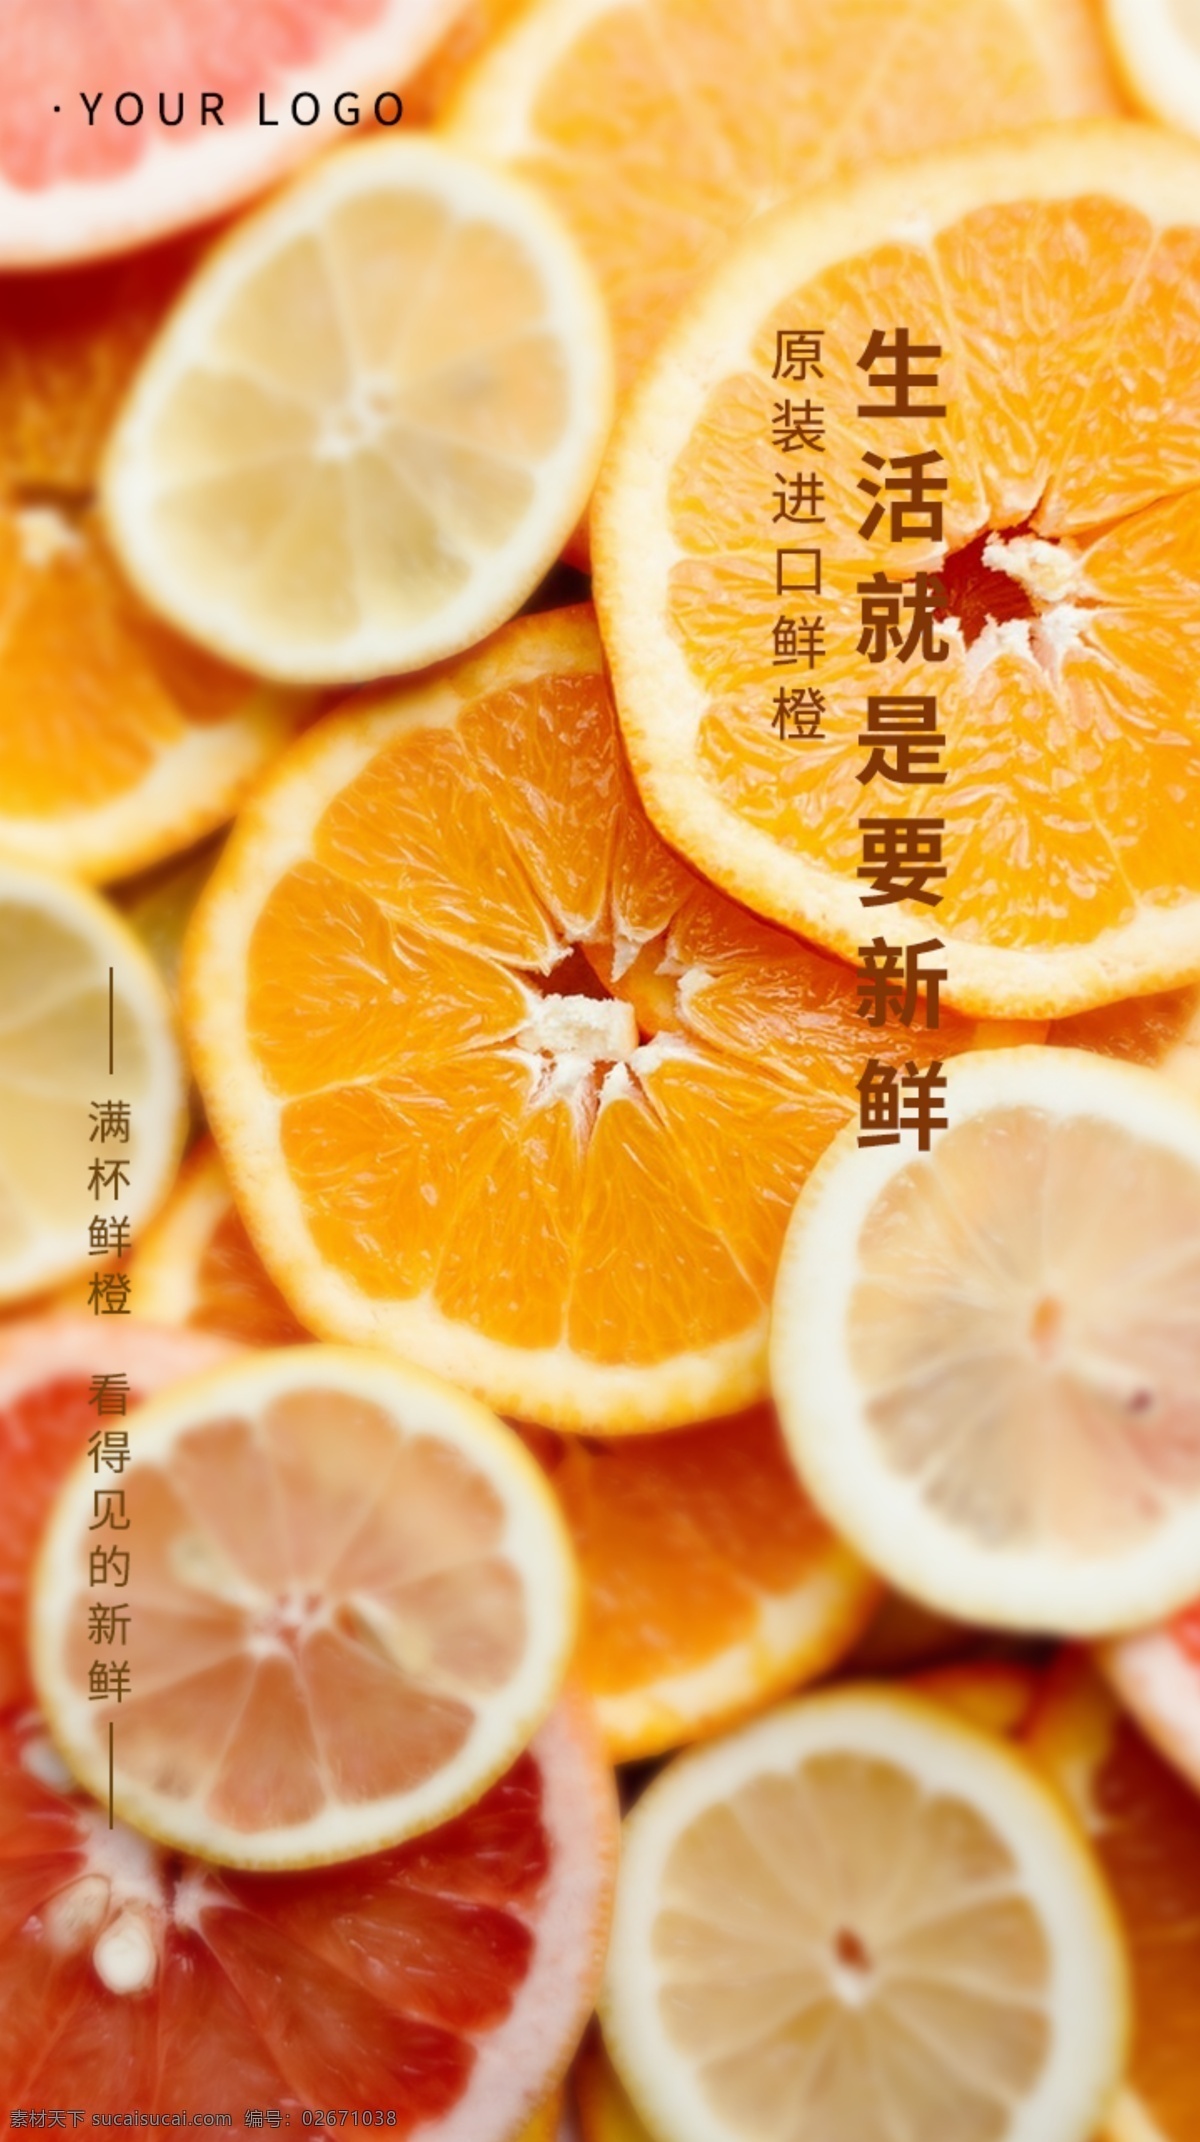 简约 微 商水 果 手机 海报 鲜橙 微商 水果 手机海报